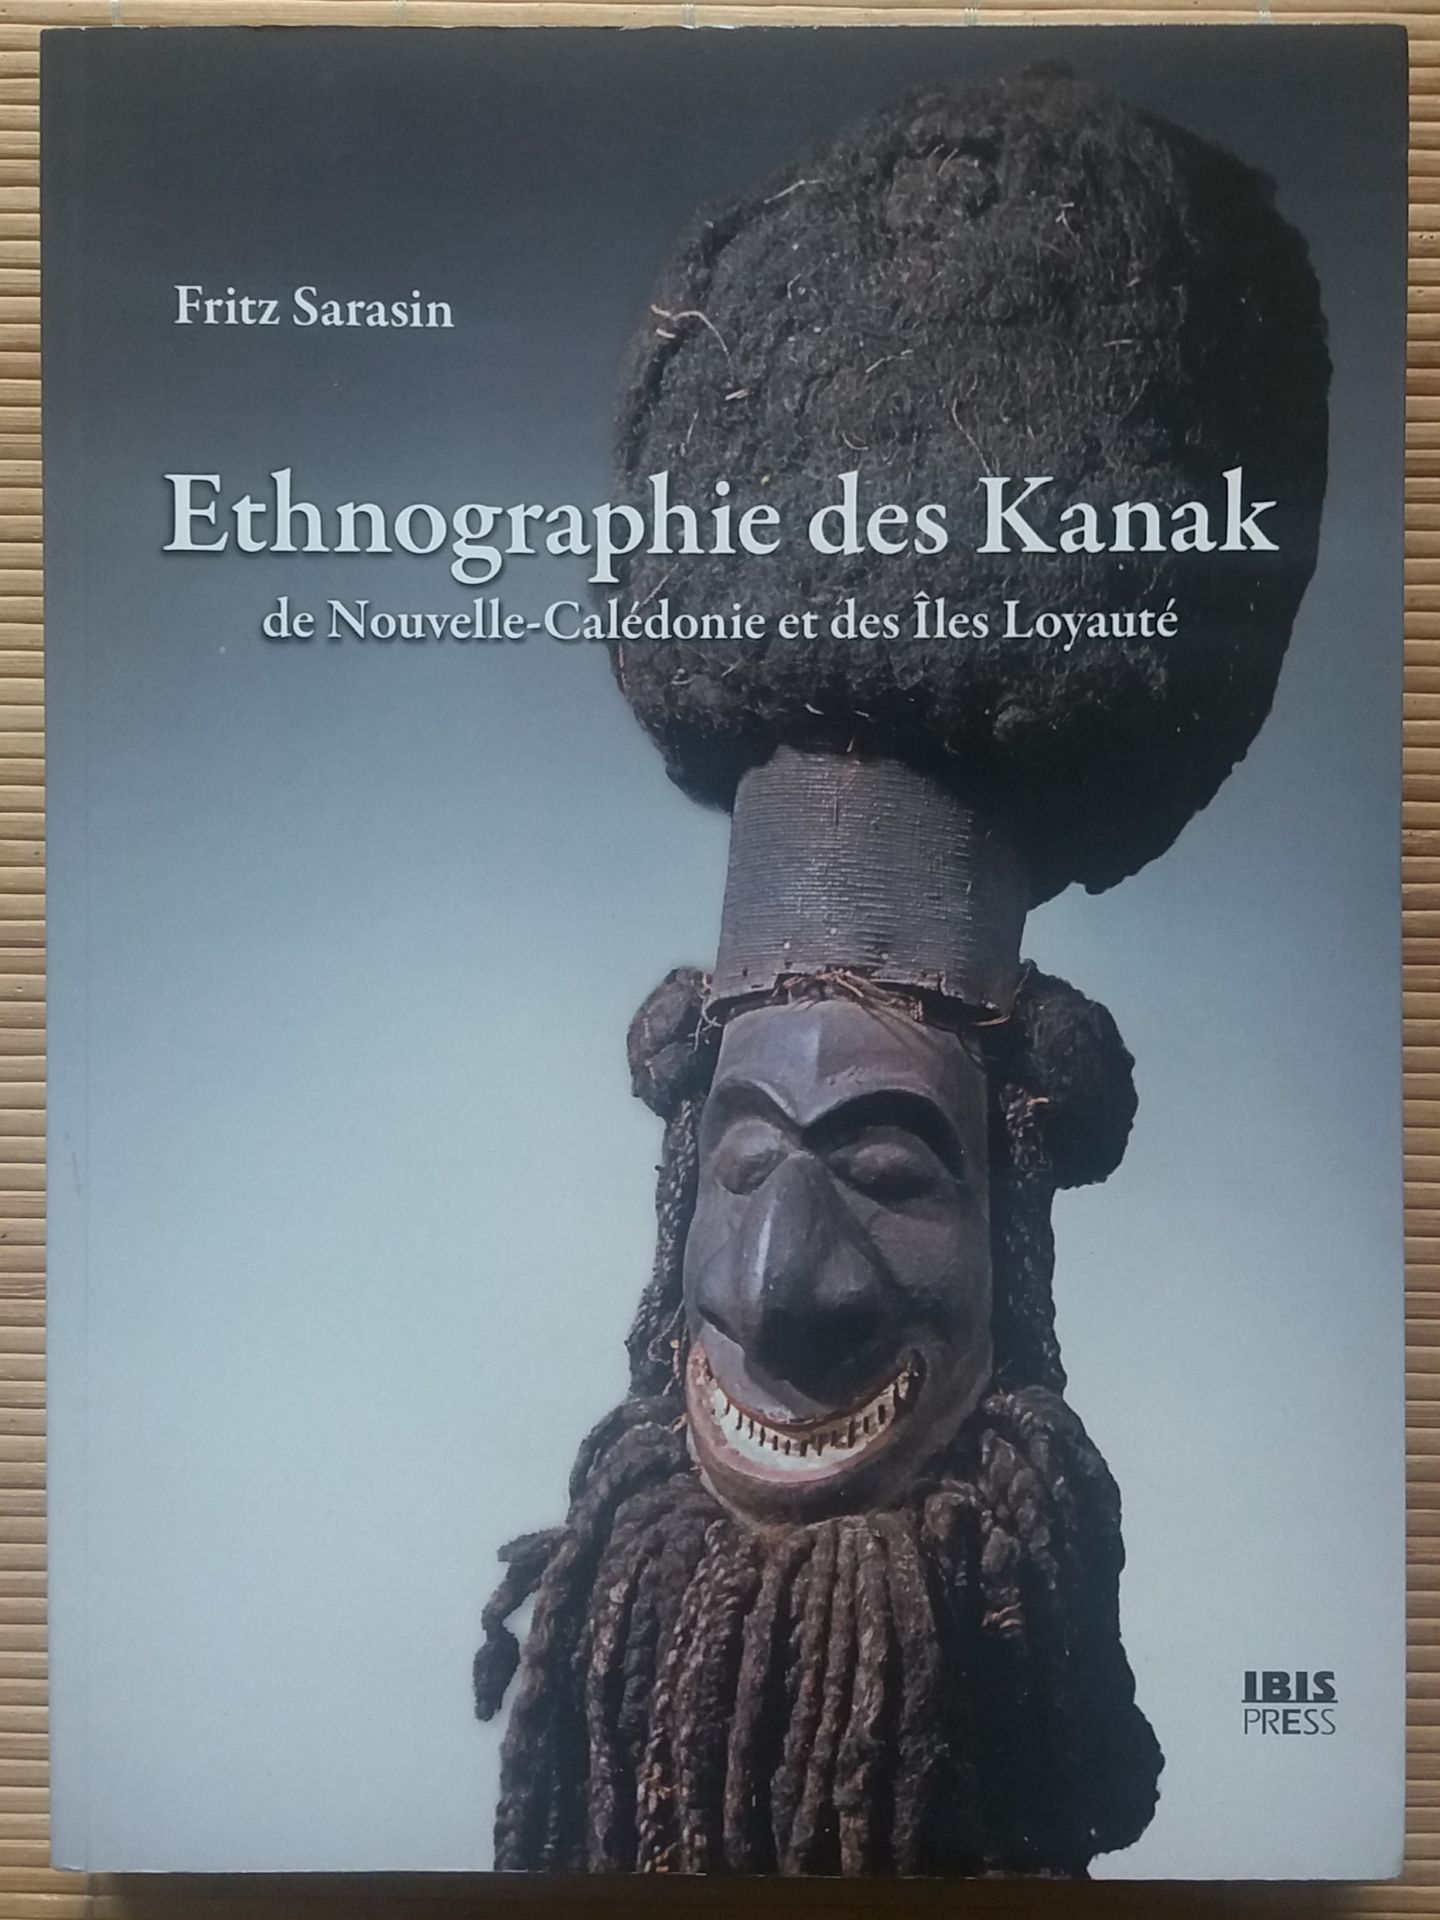 Null [ART DU PACIFIQUE]
1 ouvrage.

*Ethnographie des Kanak de Nouvelle-Calédoni&hellip;